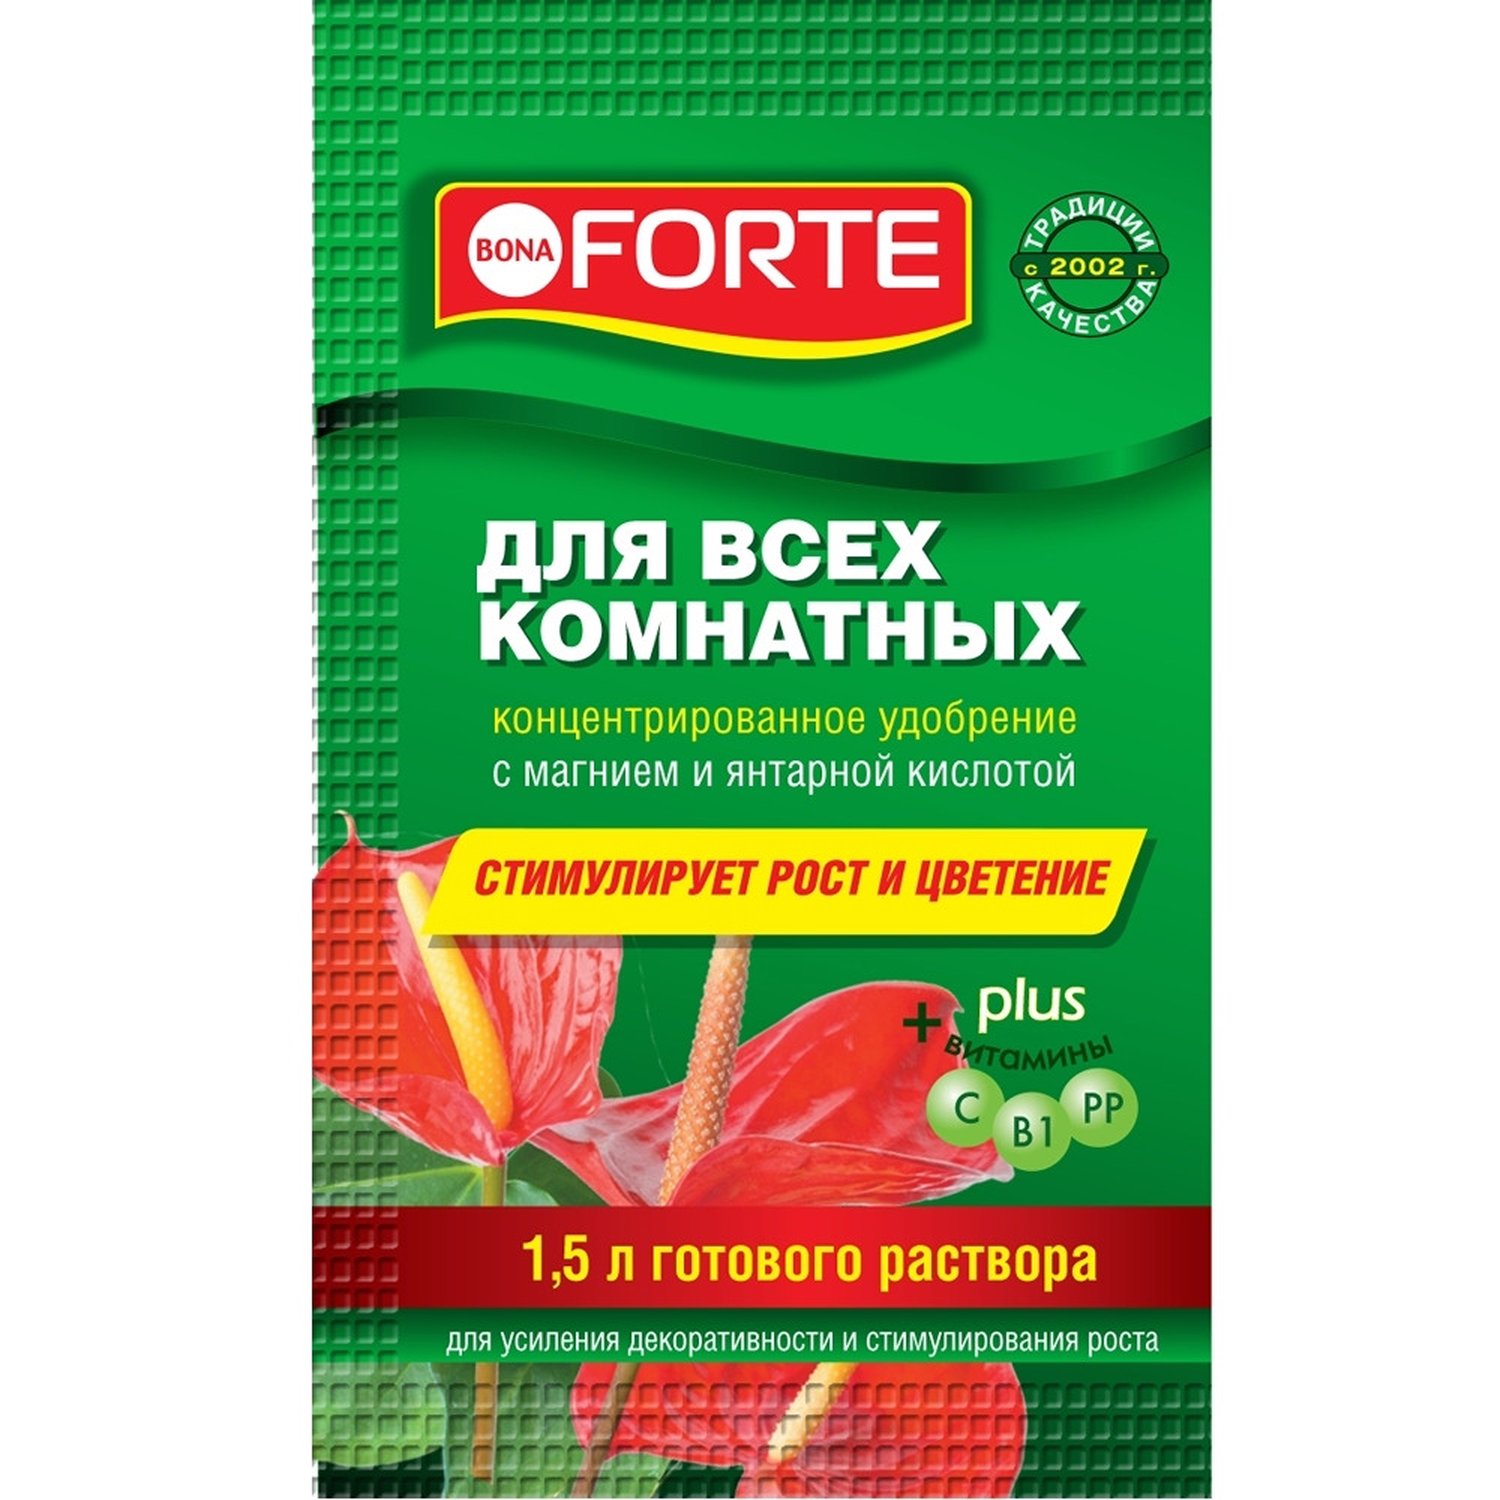 Где купить Удобрение Bona Forte для всех комнатных растений серия Красота, 10 мл Bona forte 